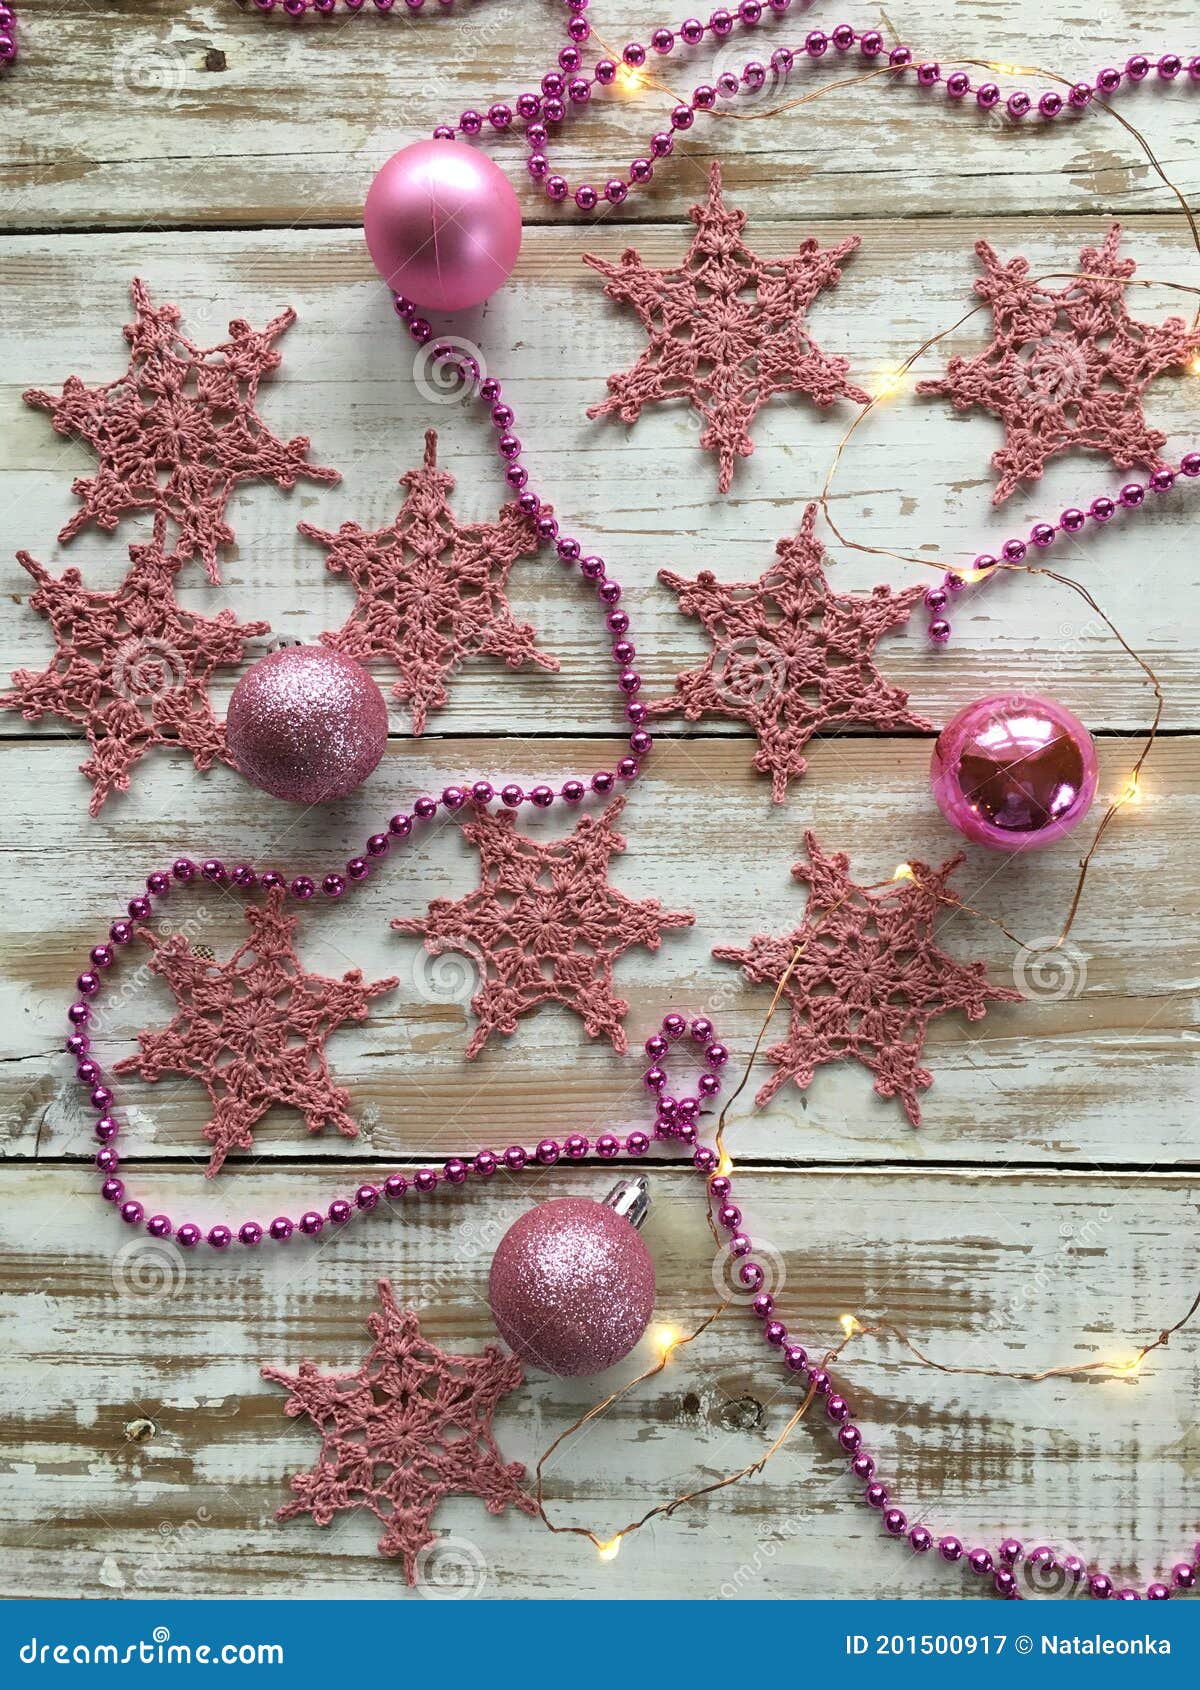 Decoração De árvore De Natal Feita à Mão - Floco De Neve Rosa - Crochet.  Imagem de Stock - Imagem de decorativo, floral: 201500917